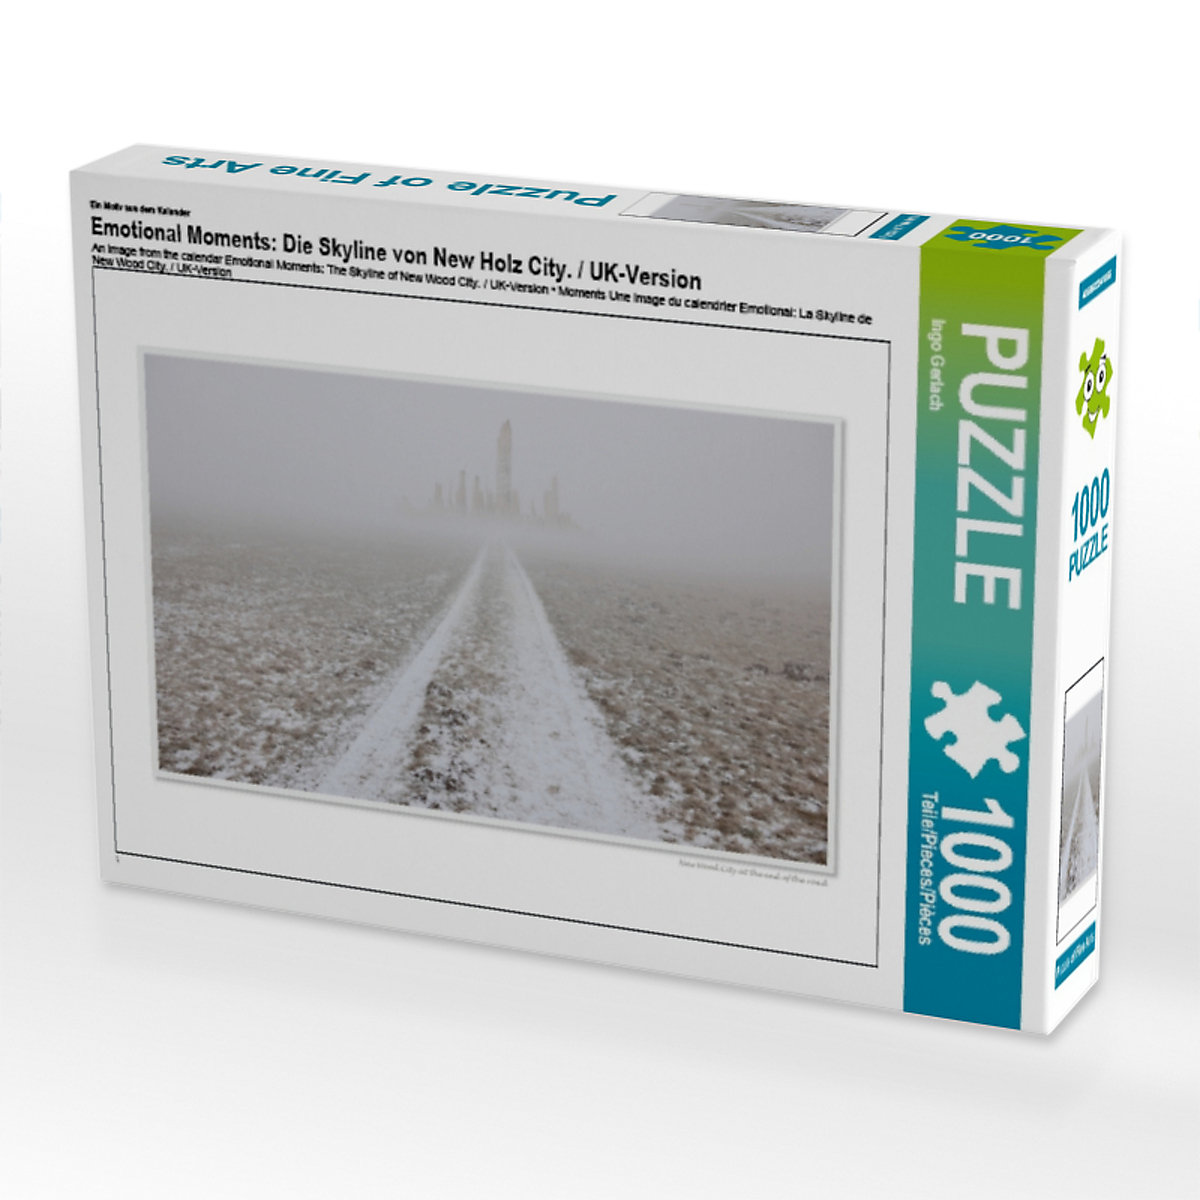 CALVENDO® Puzzle CALVENDO Puzzle Emotional Moments: Die Skyline von New Holz City. / UK-Version 1000 Teile Foto-Puzzle für glückliche Stunden